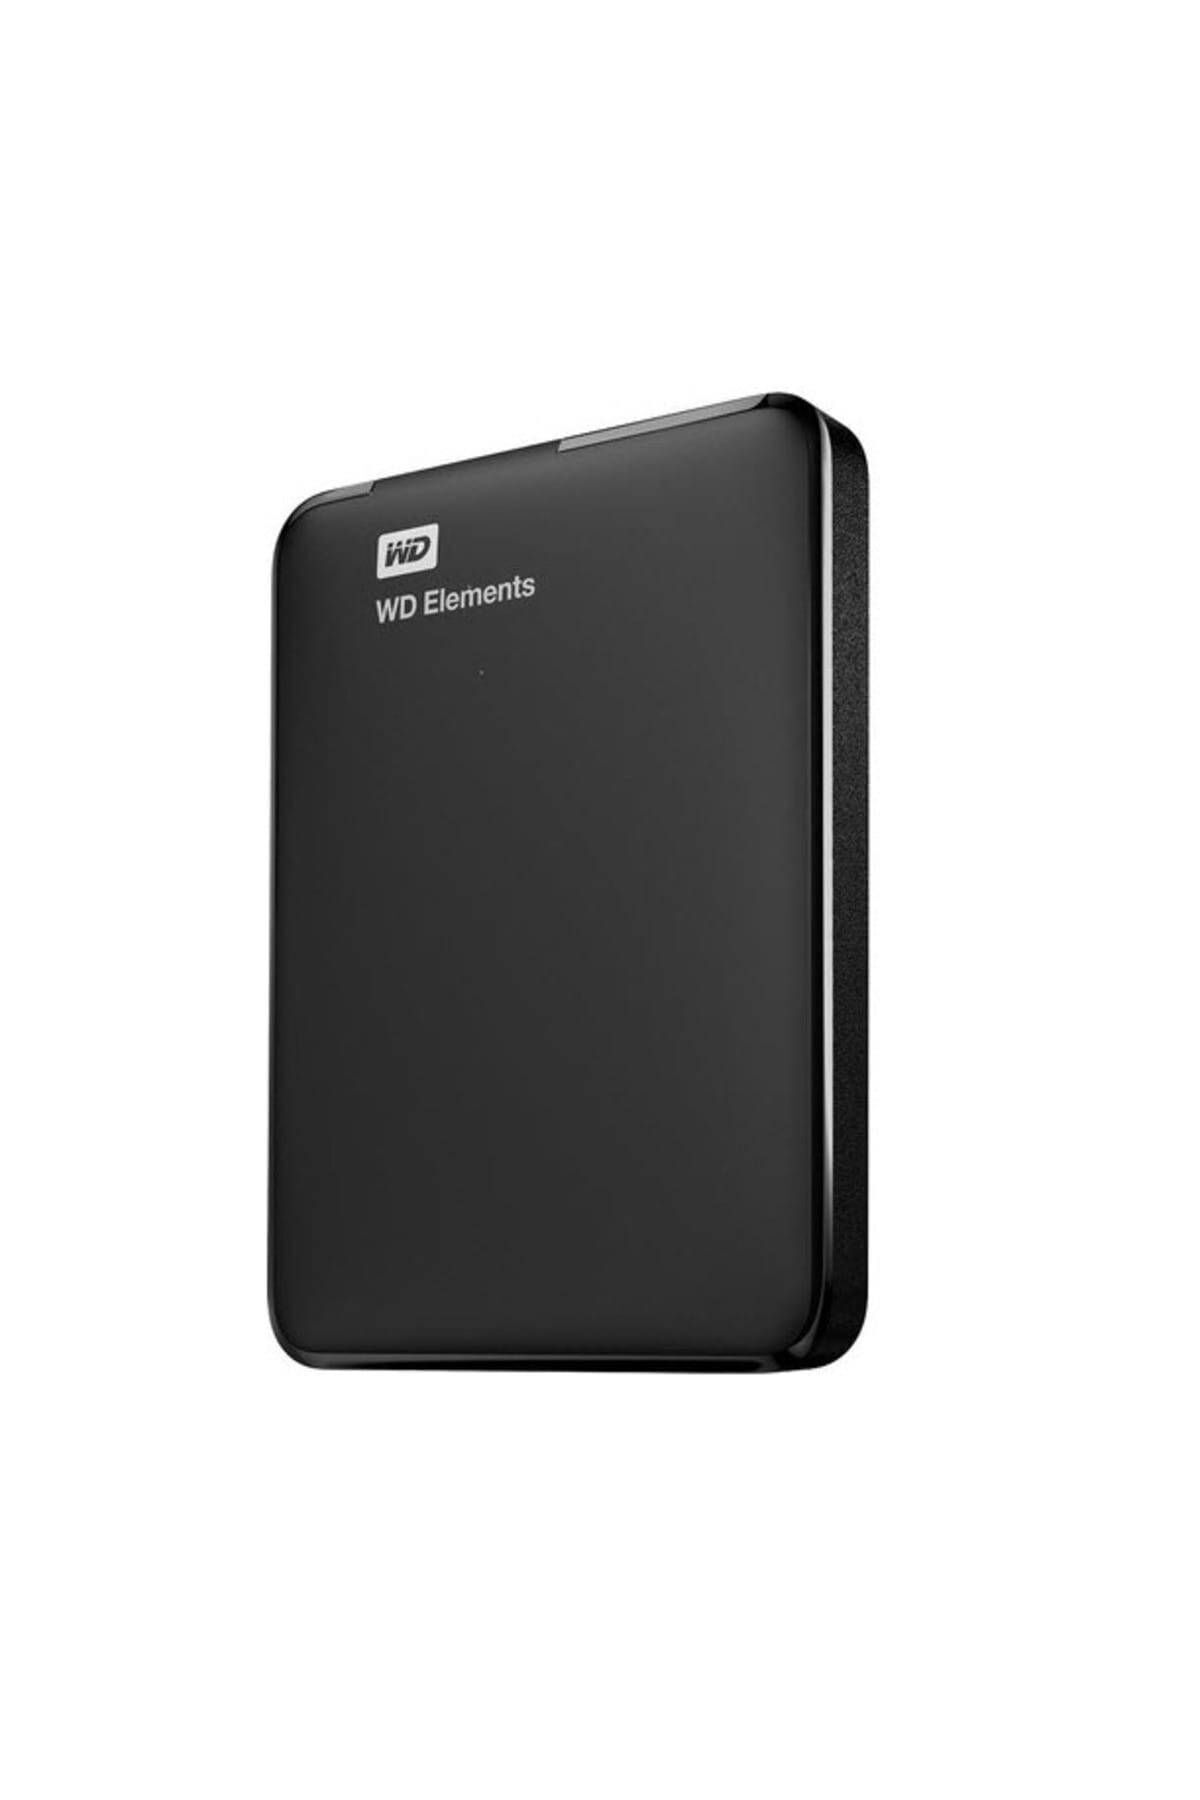 WD Digital Buzg0010bbk-wesn 1tb Black Taşınabilir Disk